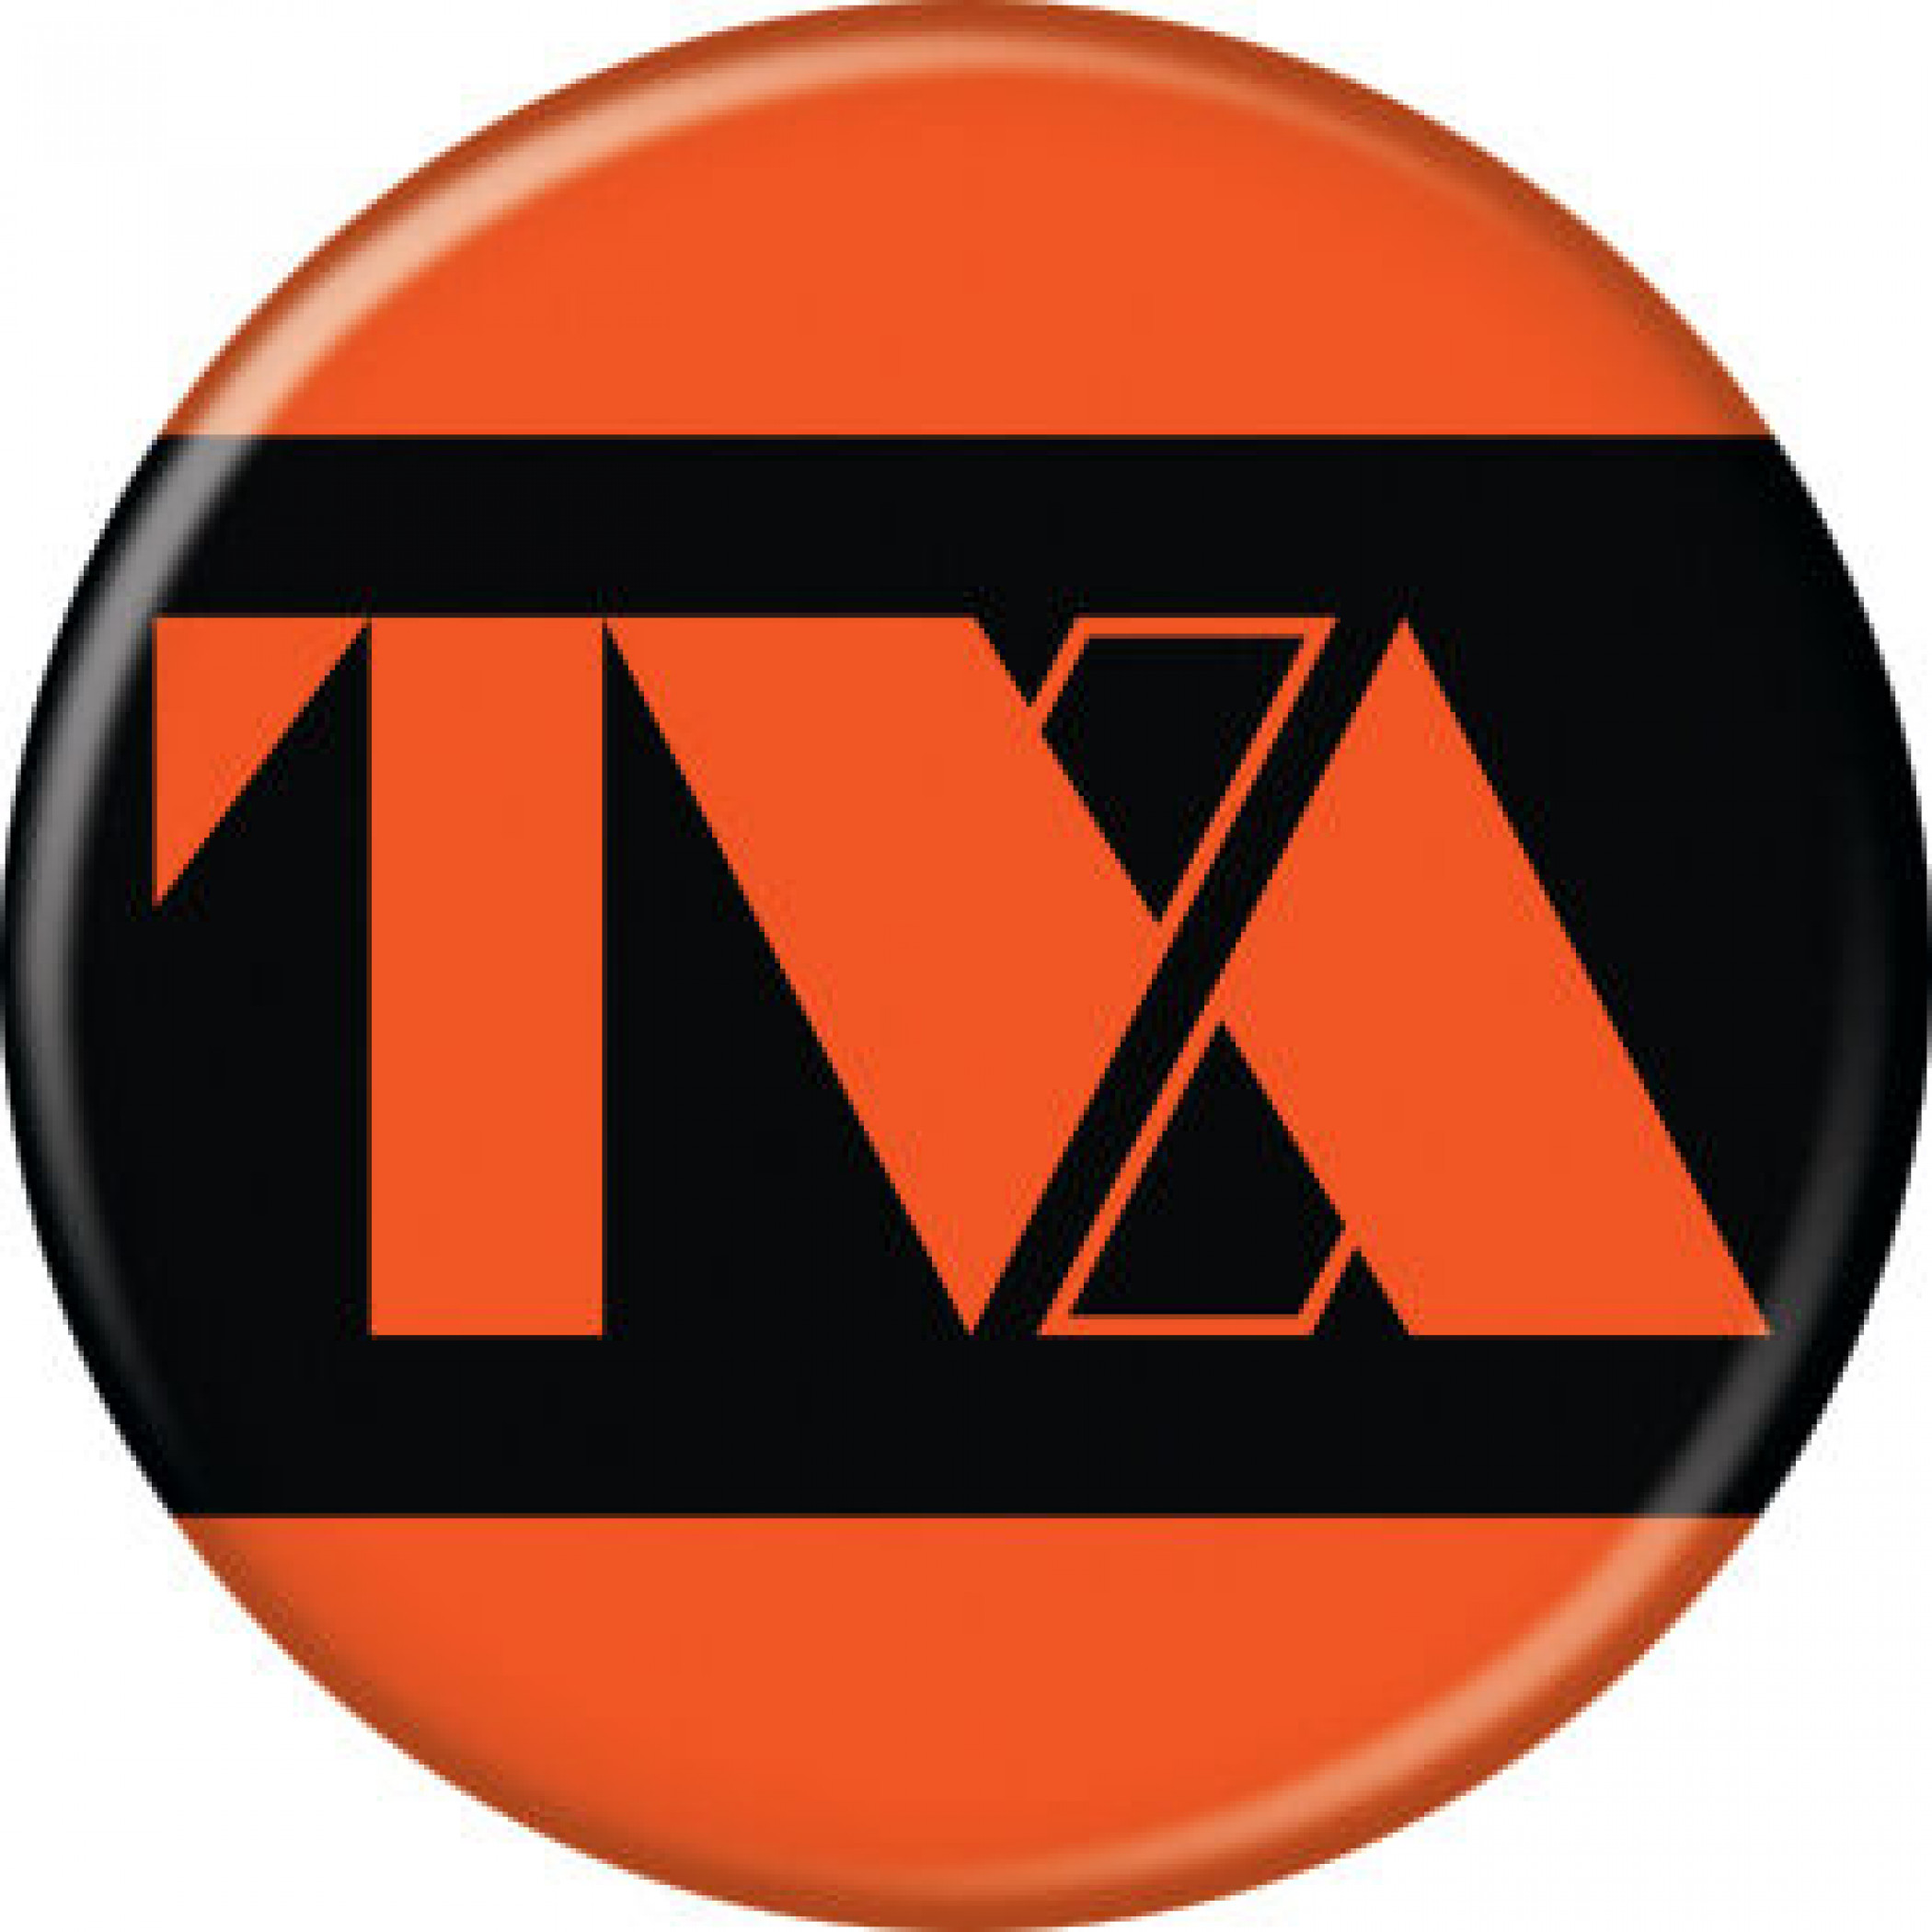 Marvel Studios Loki Series Time Variance Authority TVA Logo Button